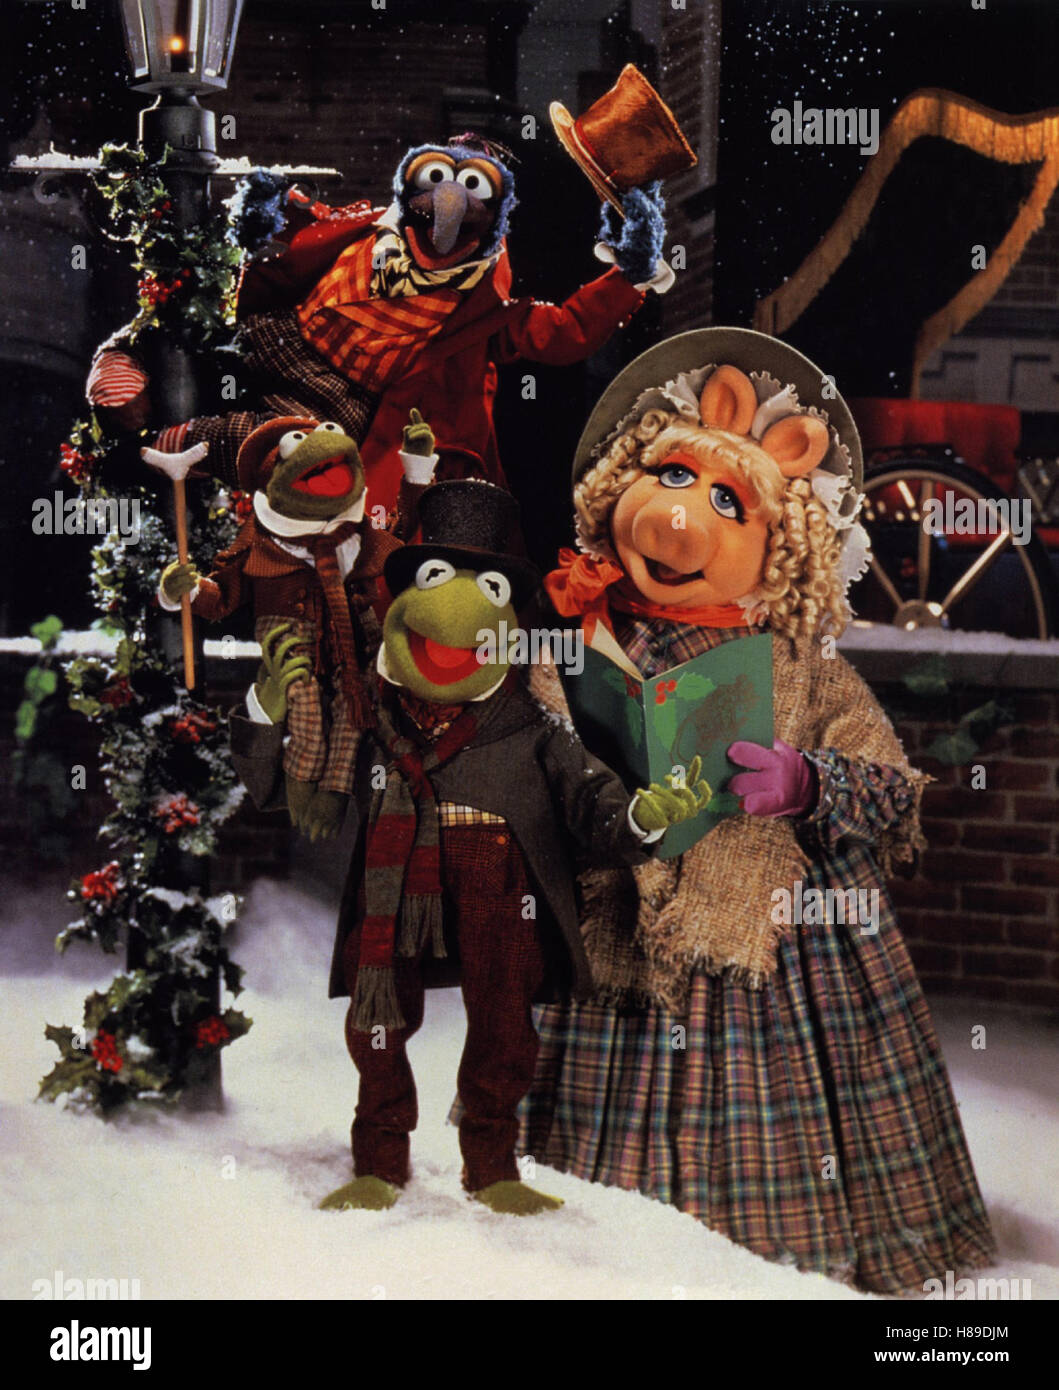 Die Muppets Weihnachtsgeschichte, (A MUPPETS CHRISTMAS CAROL) USA 1992, Regie: Brian Henson, SAM EAGLE, Kermit, Miss Piggy u.a. Sichwort: Puppen Foto Stock